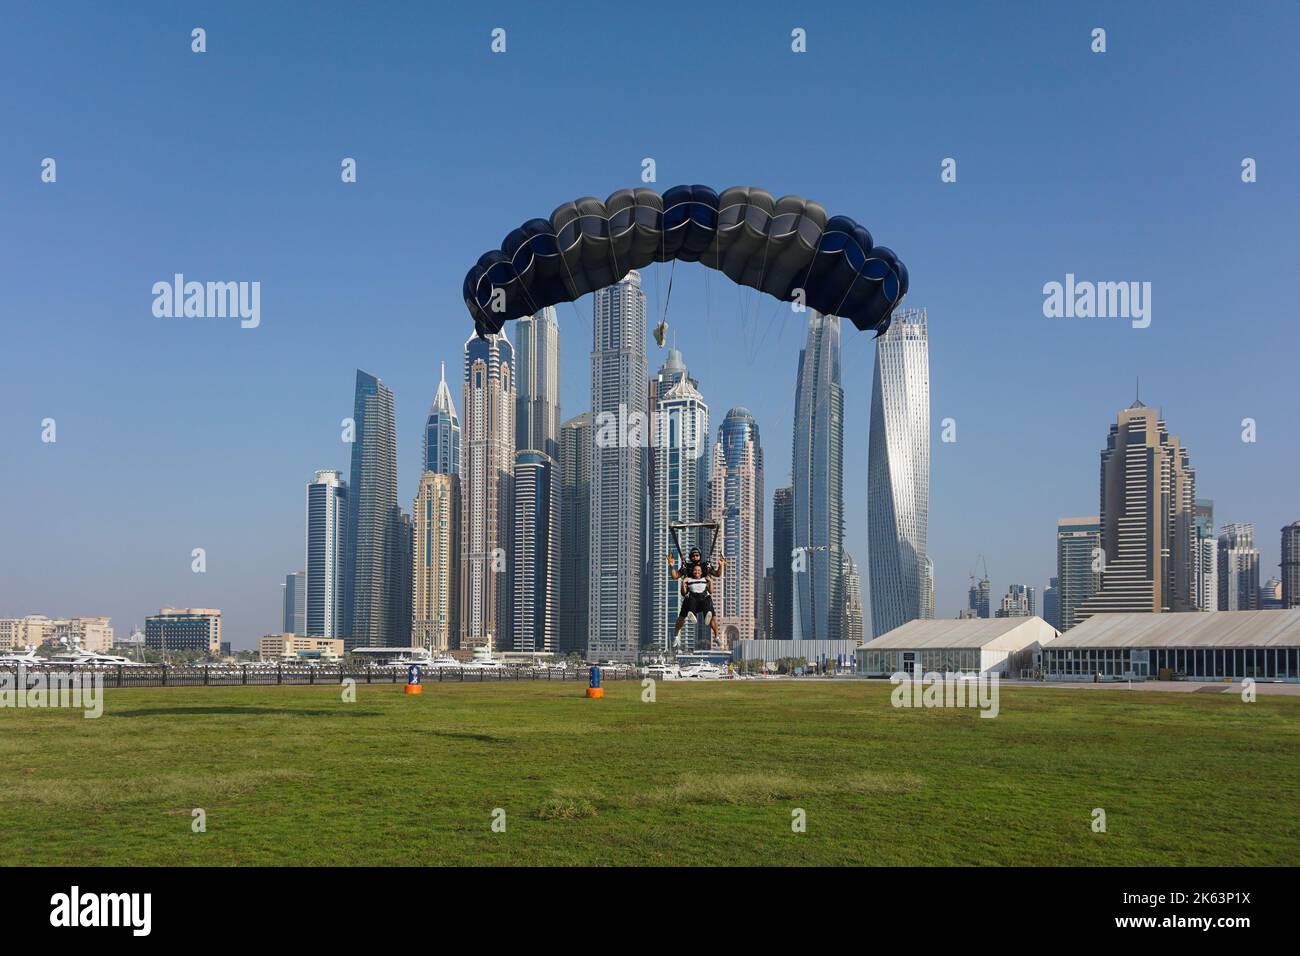 Dubai, Vereinigte Arabische Emirate - Tandem-Fallschirmspringer bereiten sich darauf vor, mit einem Fallschirm zurück in die Palm Drop Zone zu landen. Dubai Marina Wolkenkratzer im Hintergrund. Stockfoto